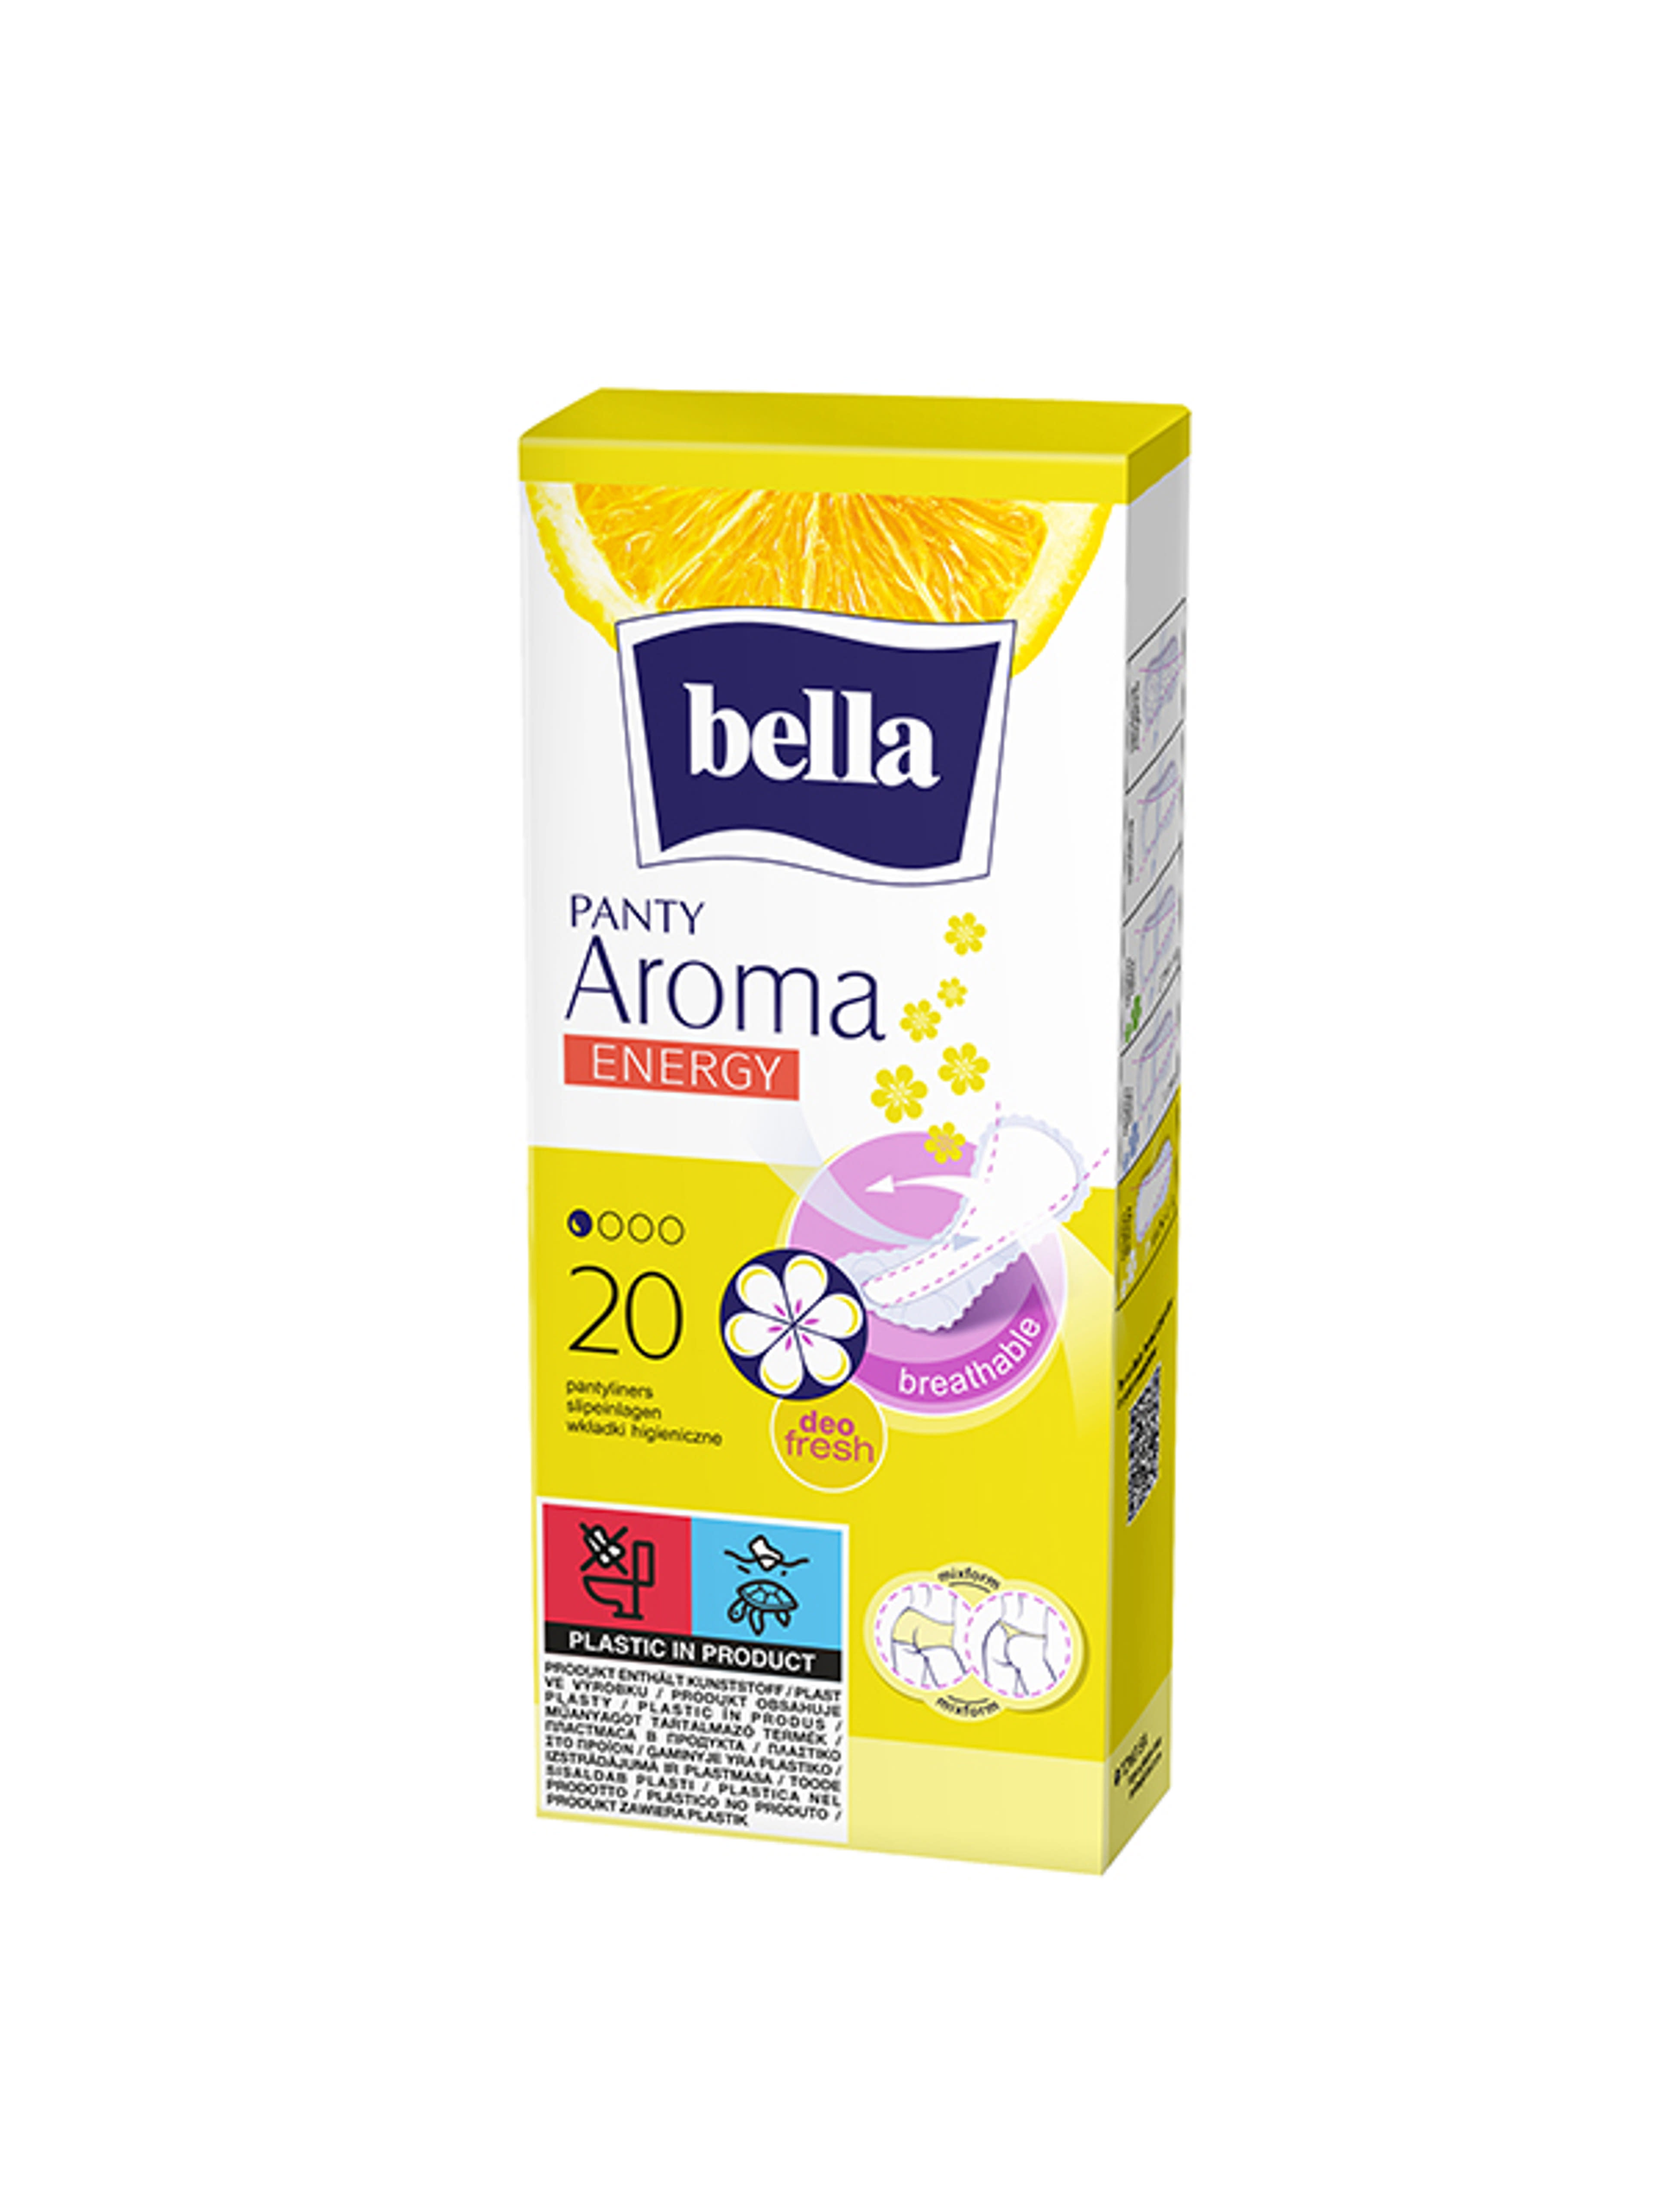 Bella Panty Aroma Energy tisztasági betét - 20 db